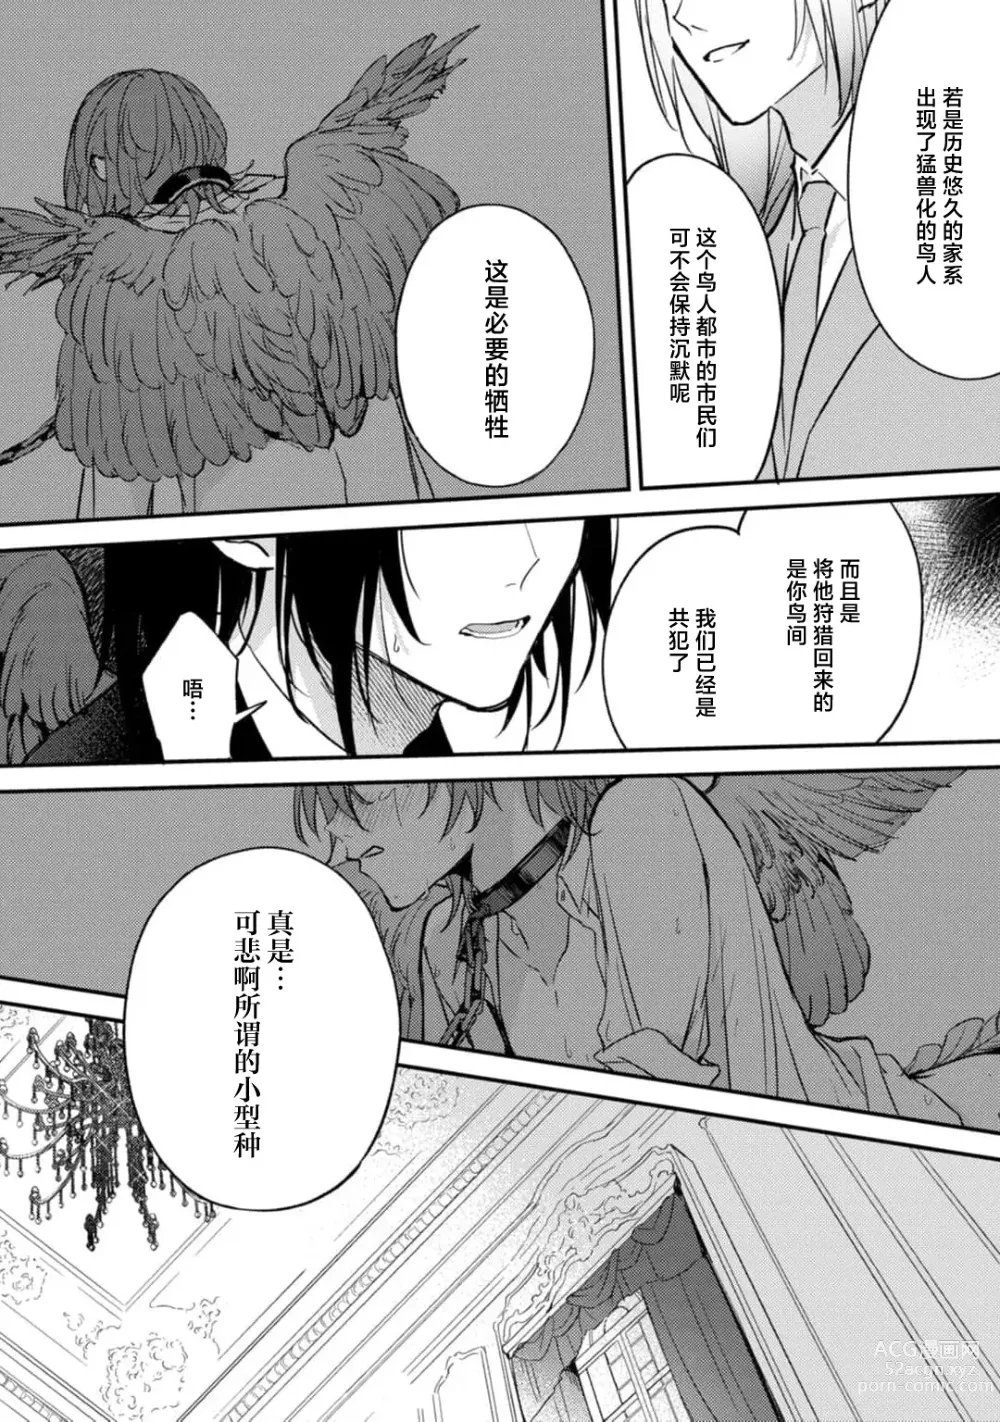 Page 7 of manga 枭与夜想曲 act. 1